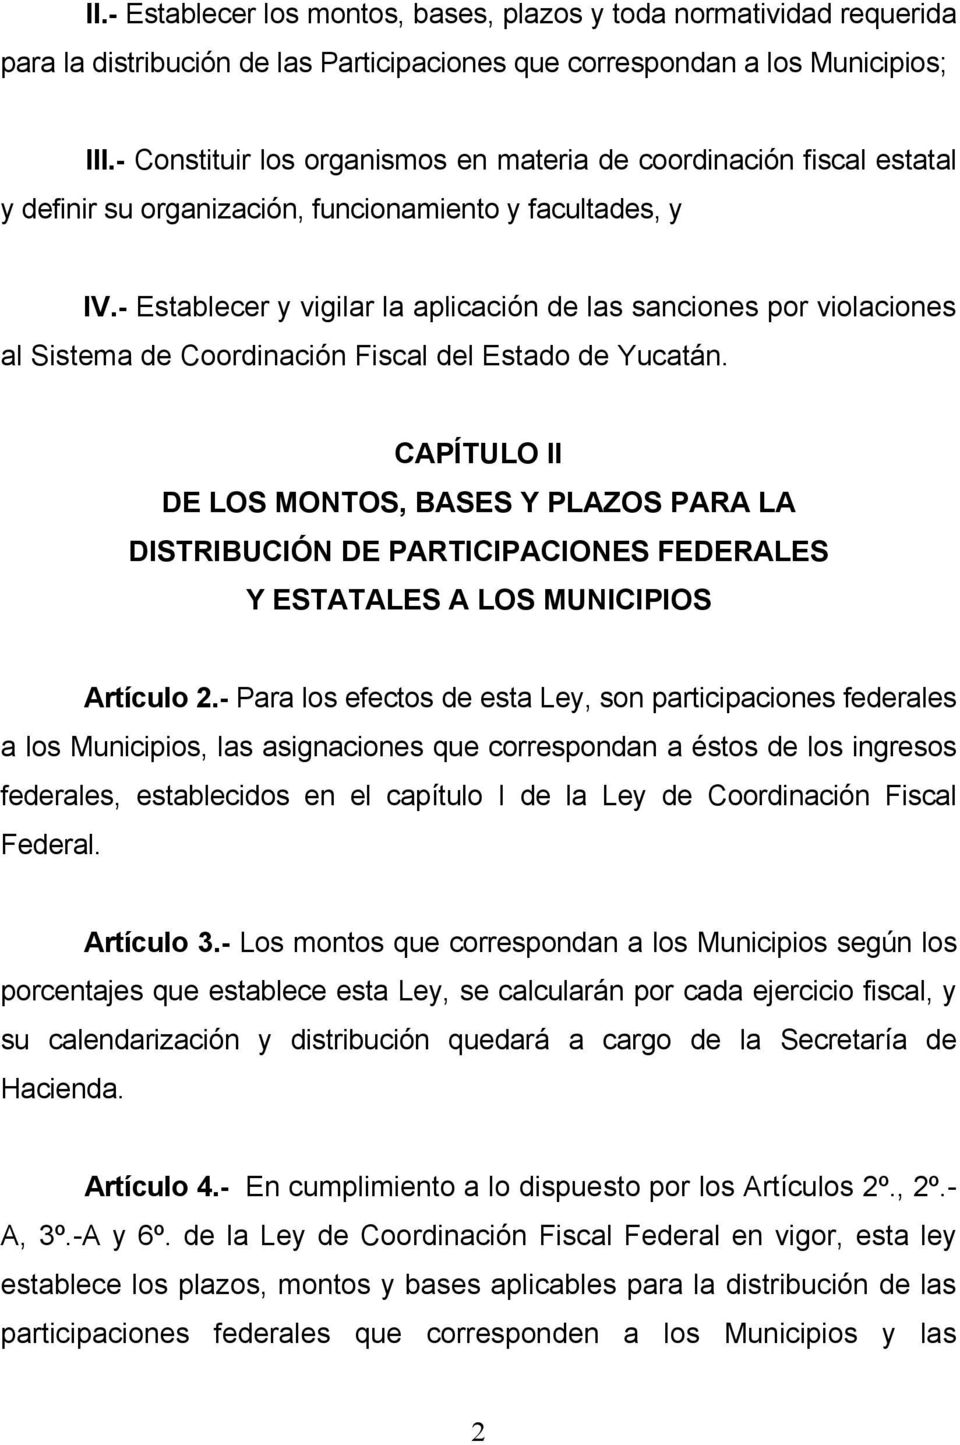 - Establecer y vigilar la aplicación de las sanciones por violaciones al Sistema de Coordinación Fiscal del Estado de Yucatán.